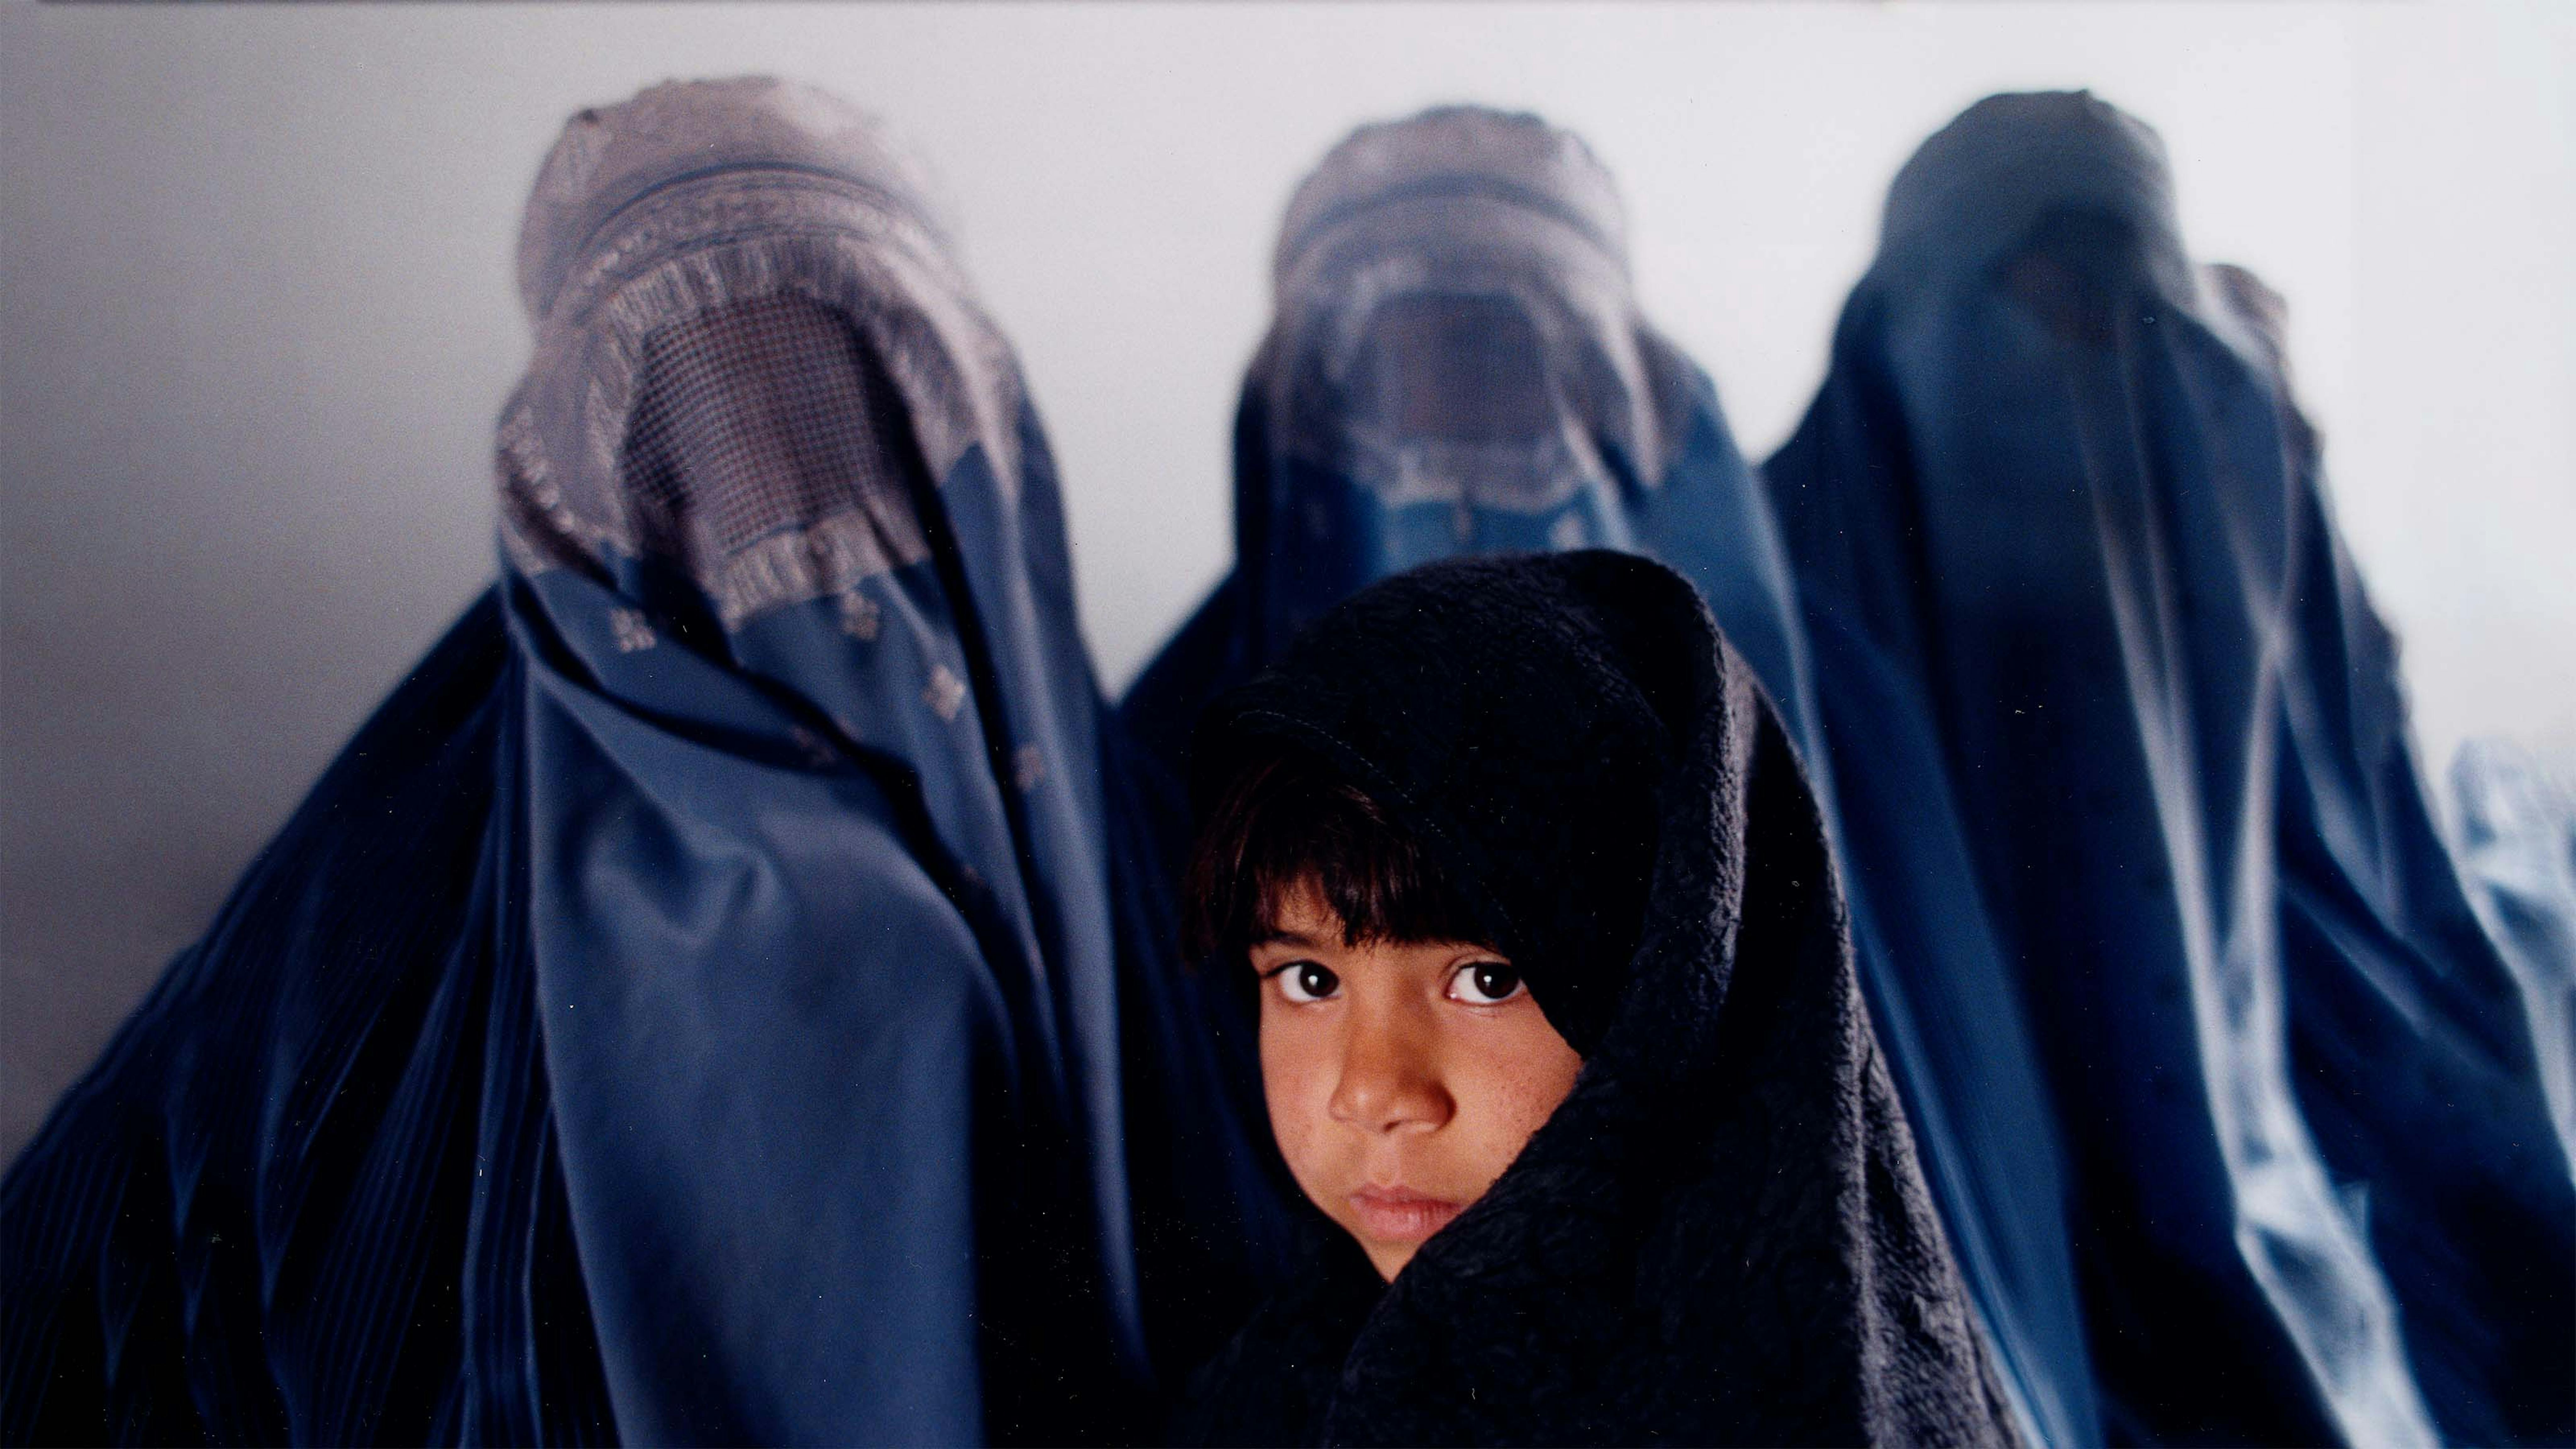 Una bambina afgana assieme a tre donne col burqua nell’anno 2000, durante il precedente governo dei talebani